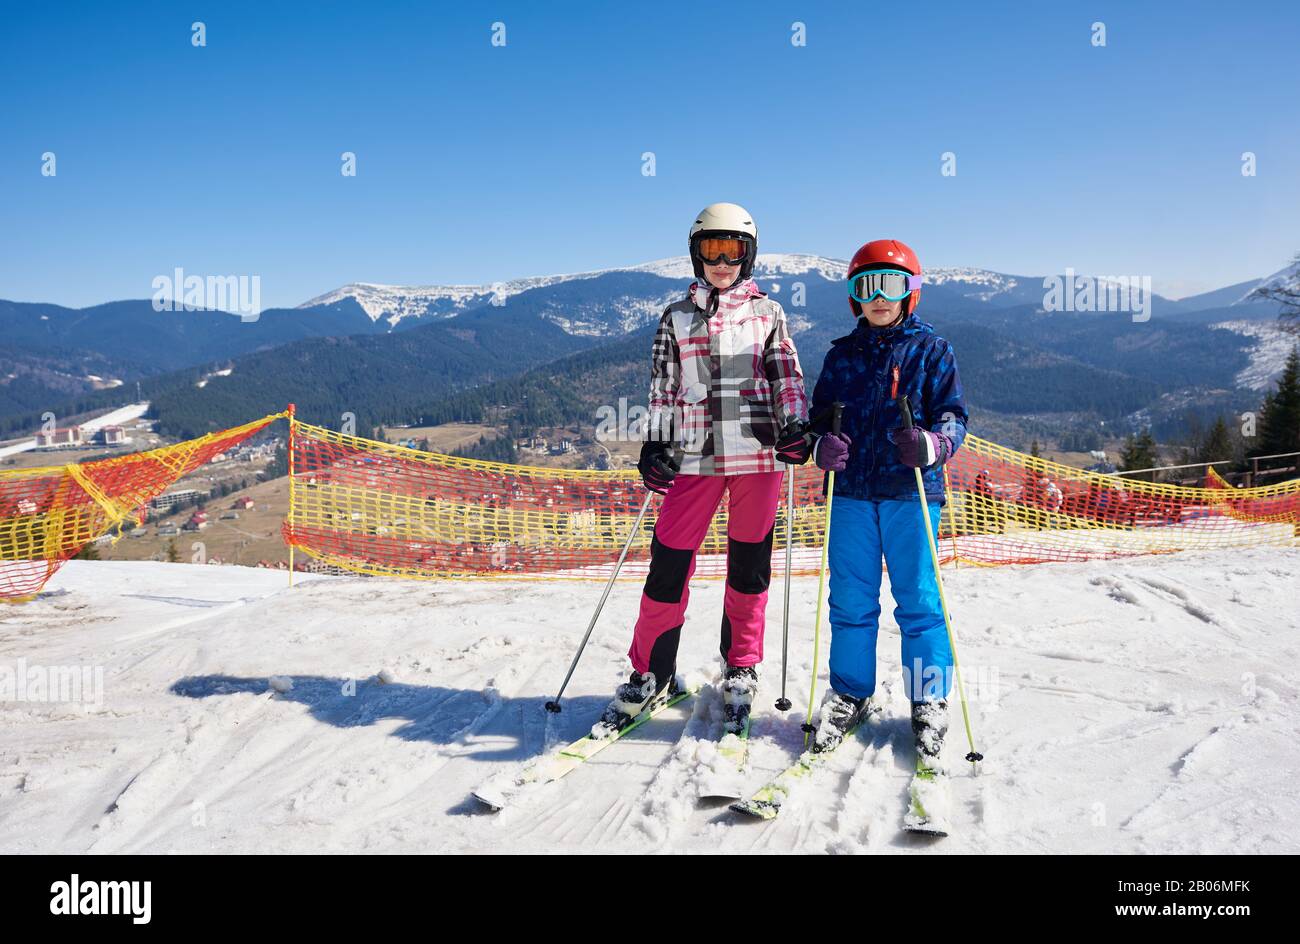 Dos adolescentes, niño y niña con ropa abrigada y gafas en los esquís en la  nieve profunda en el fondo de la estación de esquí, cielo azul brillante y  montañas de invierno.